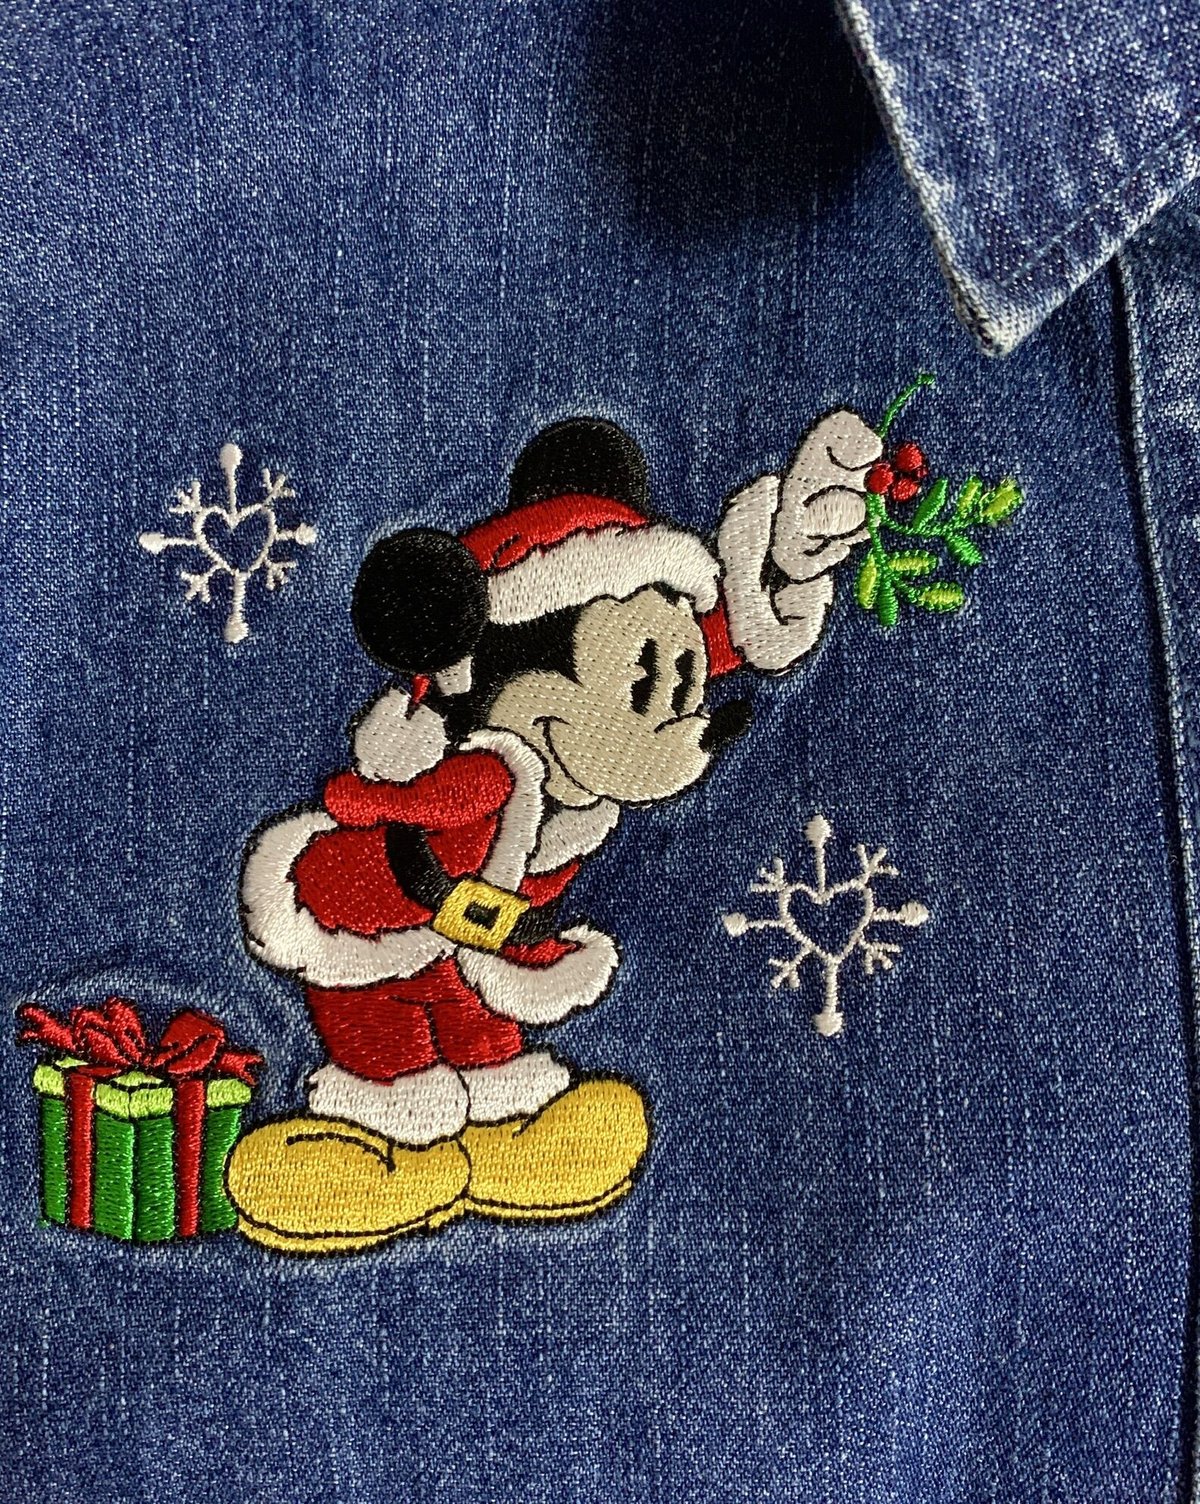 Disney 刺繍デニムシャツ ミッキー ミニー クリスマス ビッグサイズ